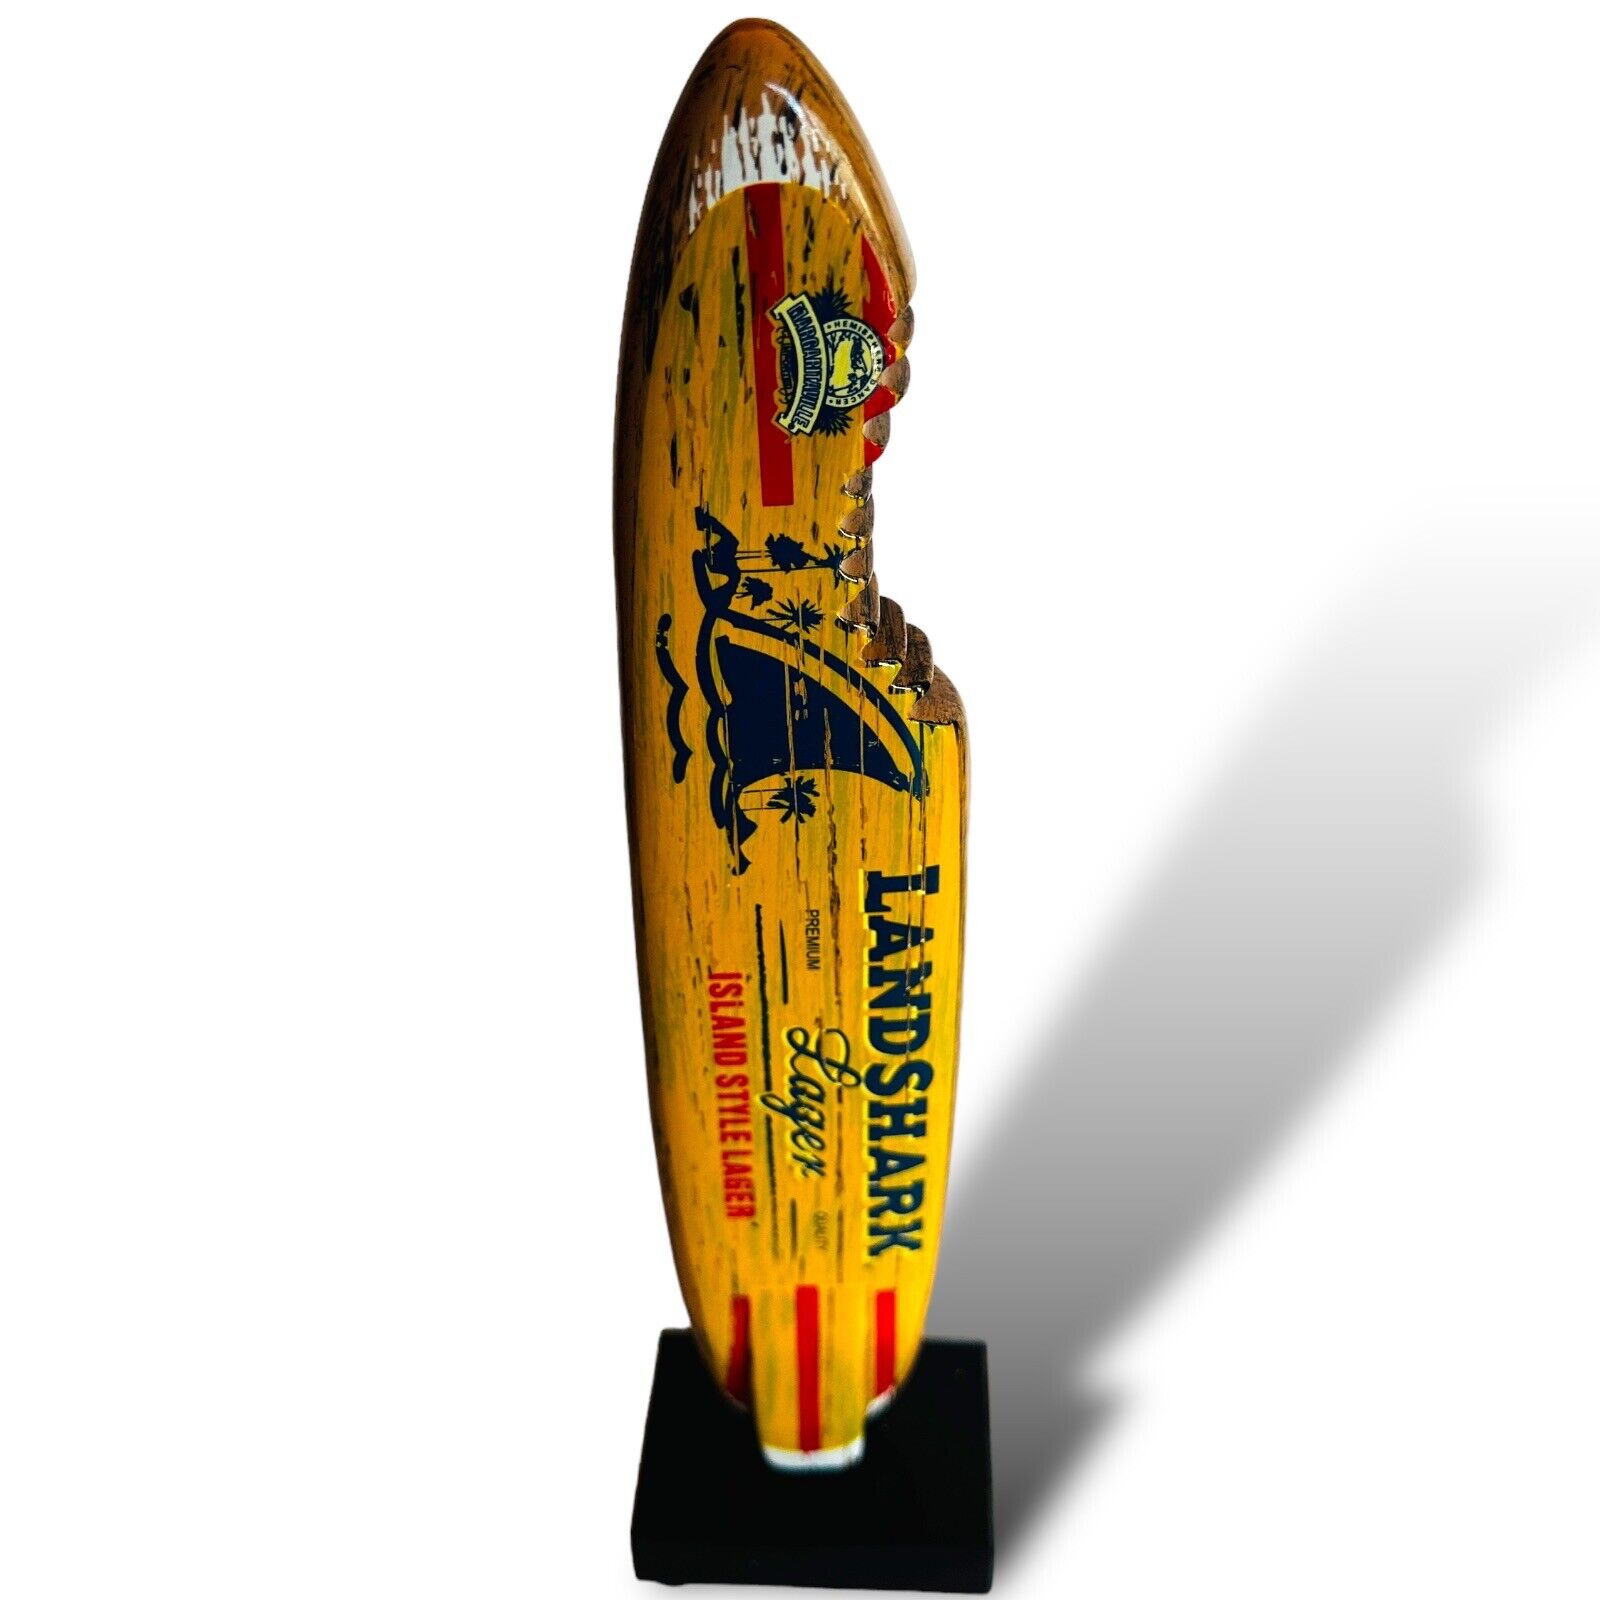 LANDSHARK Beer Tap Handle ISLAND STYLE LAGER SHARK BITTEN SURFBOARD FLORIDA